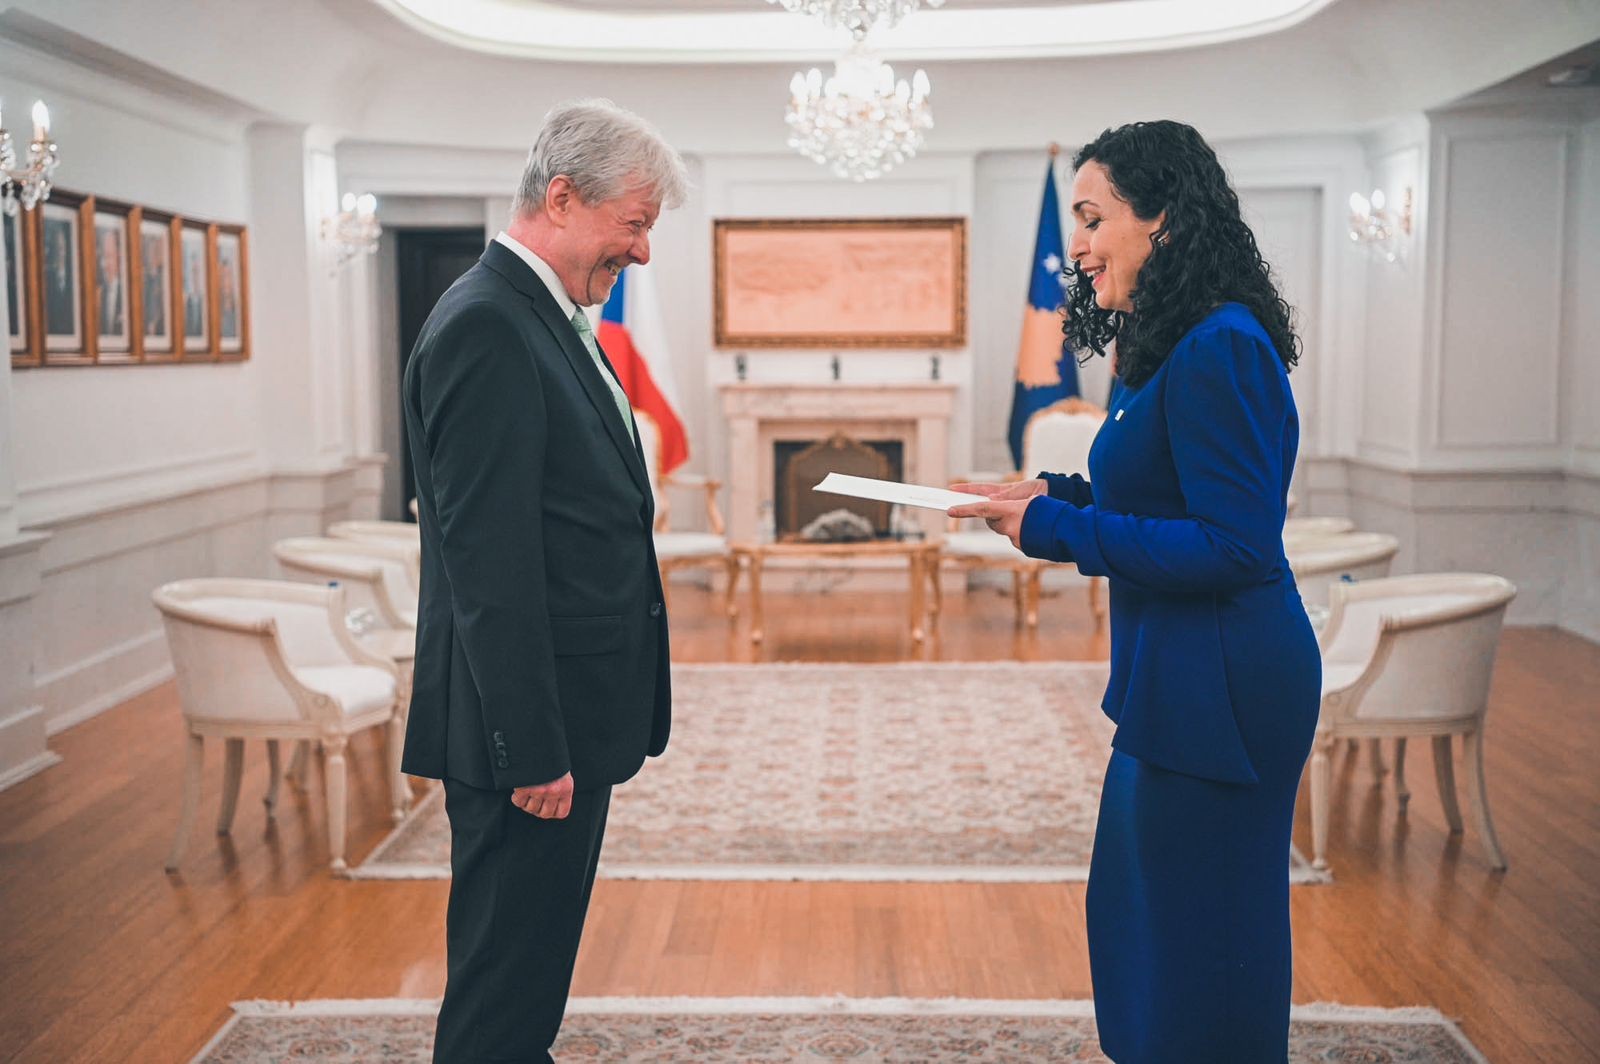 Presidentja Osmani pranoi letrat kredenciale nga ambasadori i ri i Republikës Çeke 